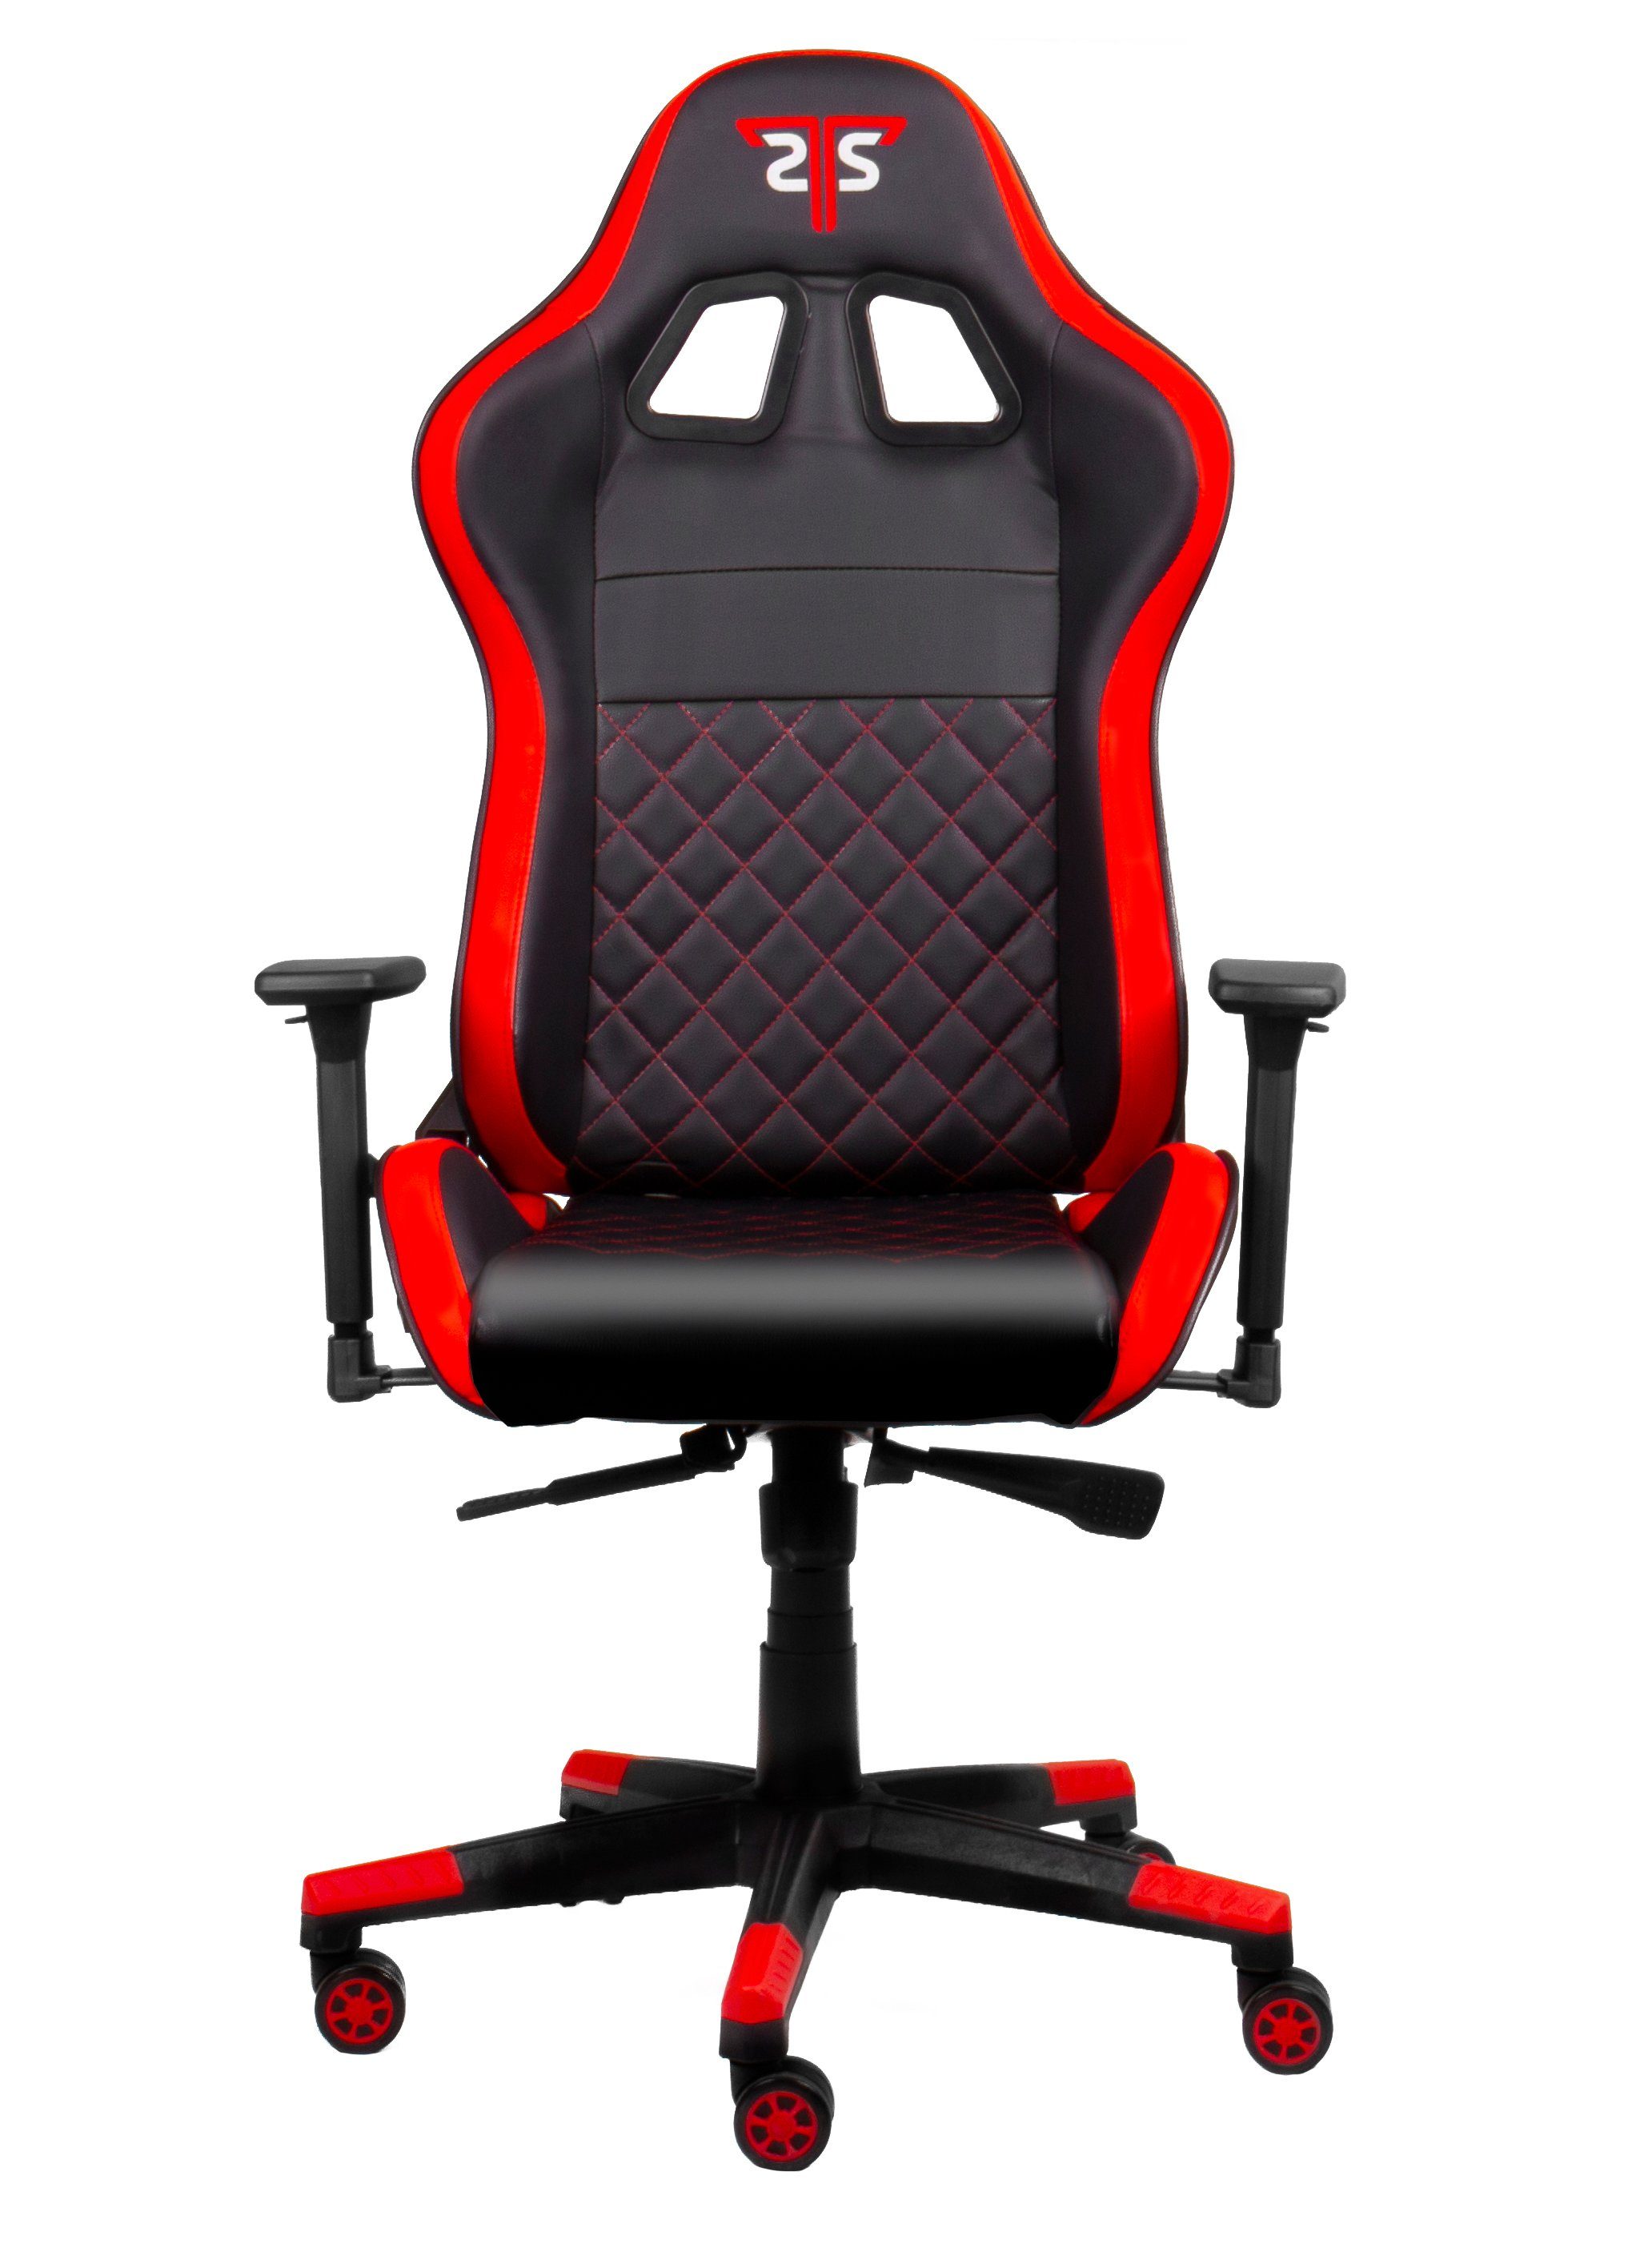 Red Gamingstuhl,Schreibtischstuhl XL" "Striker ergonomischer Code Gaming-Stuhl Hyrican